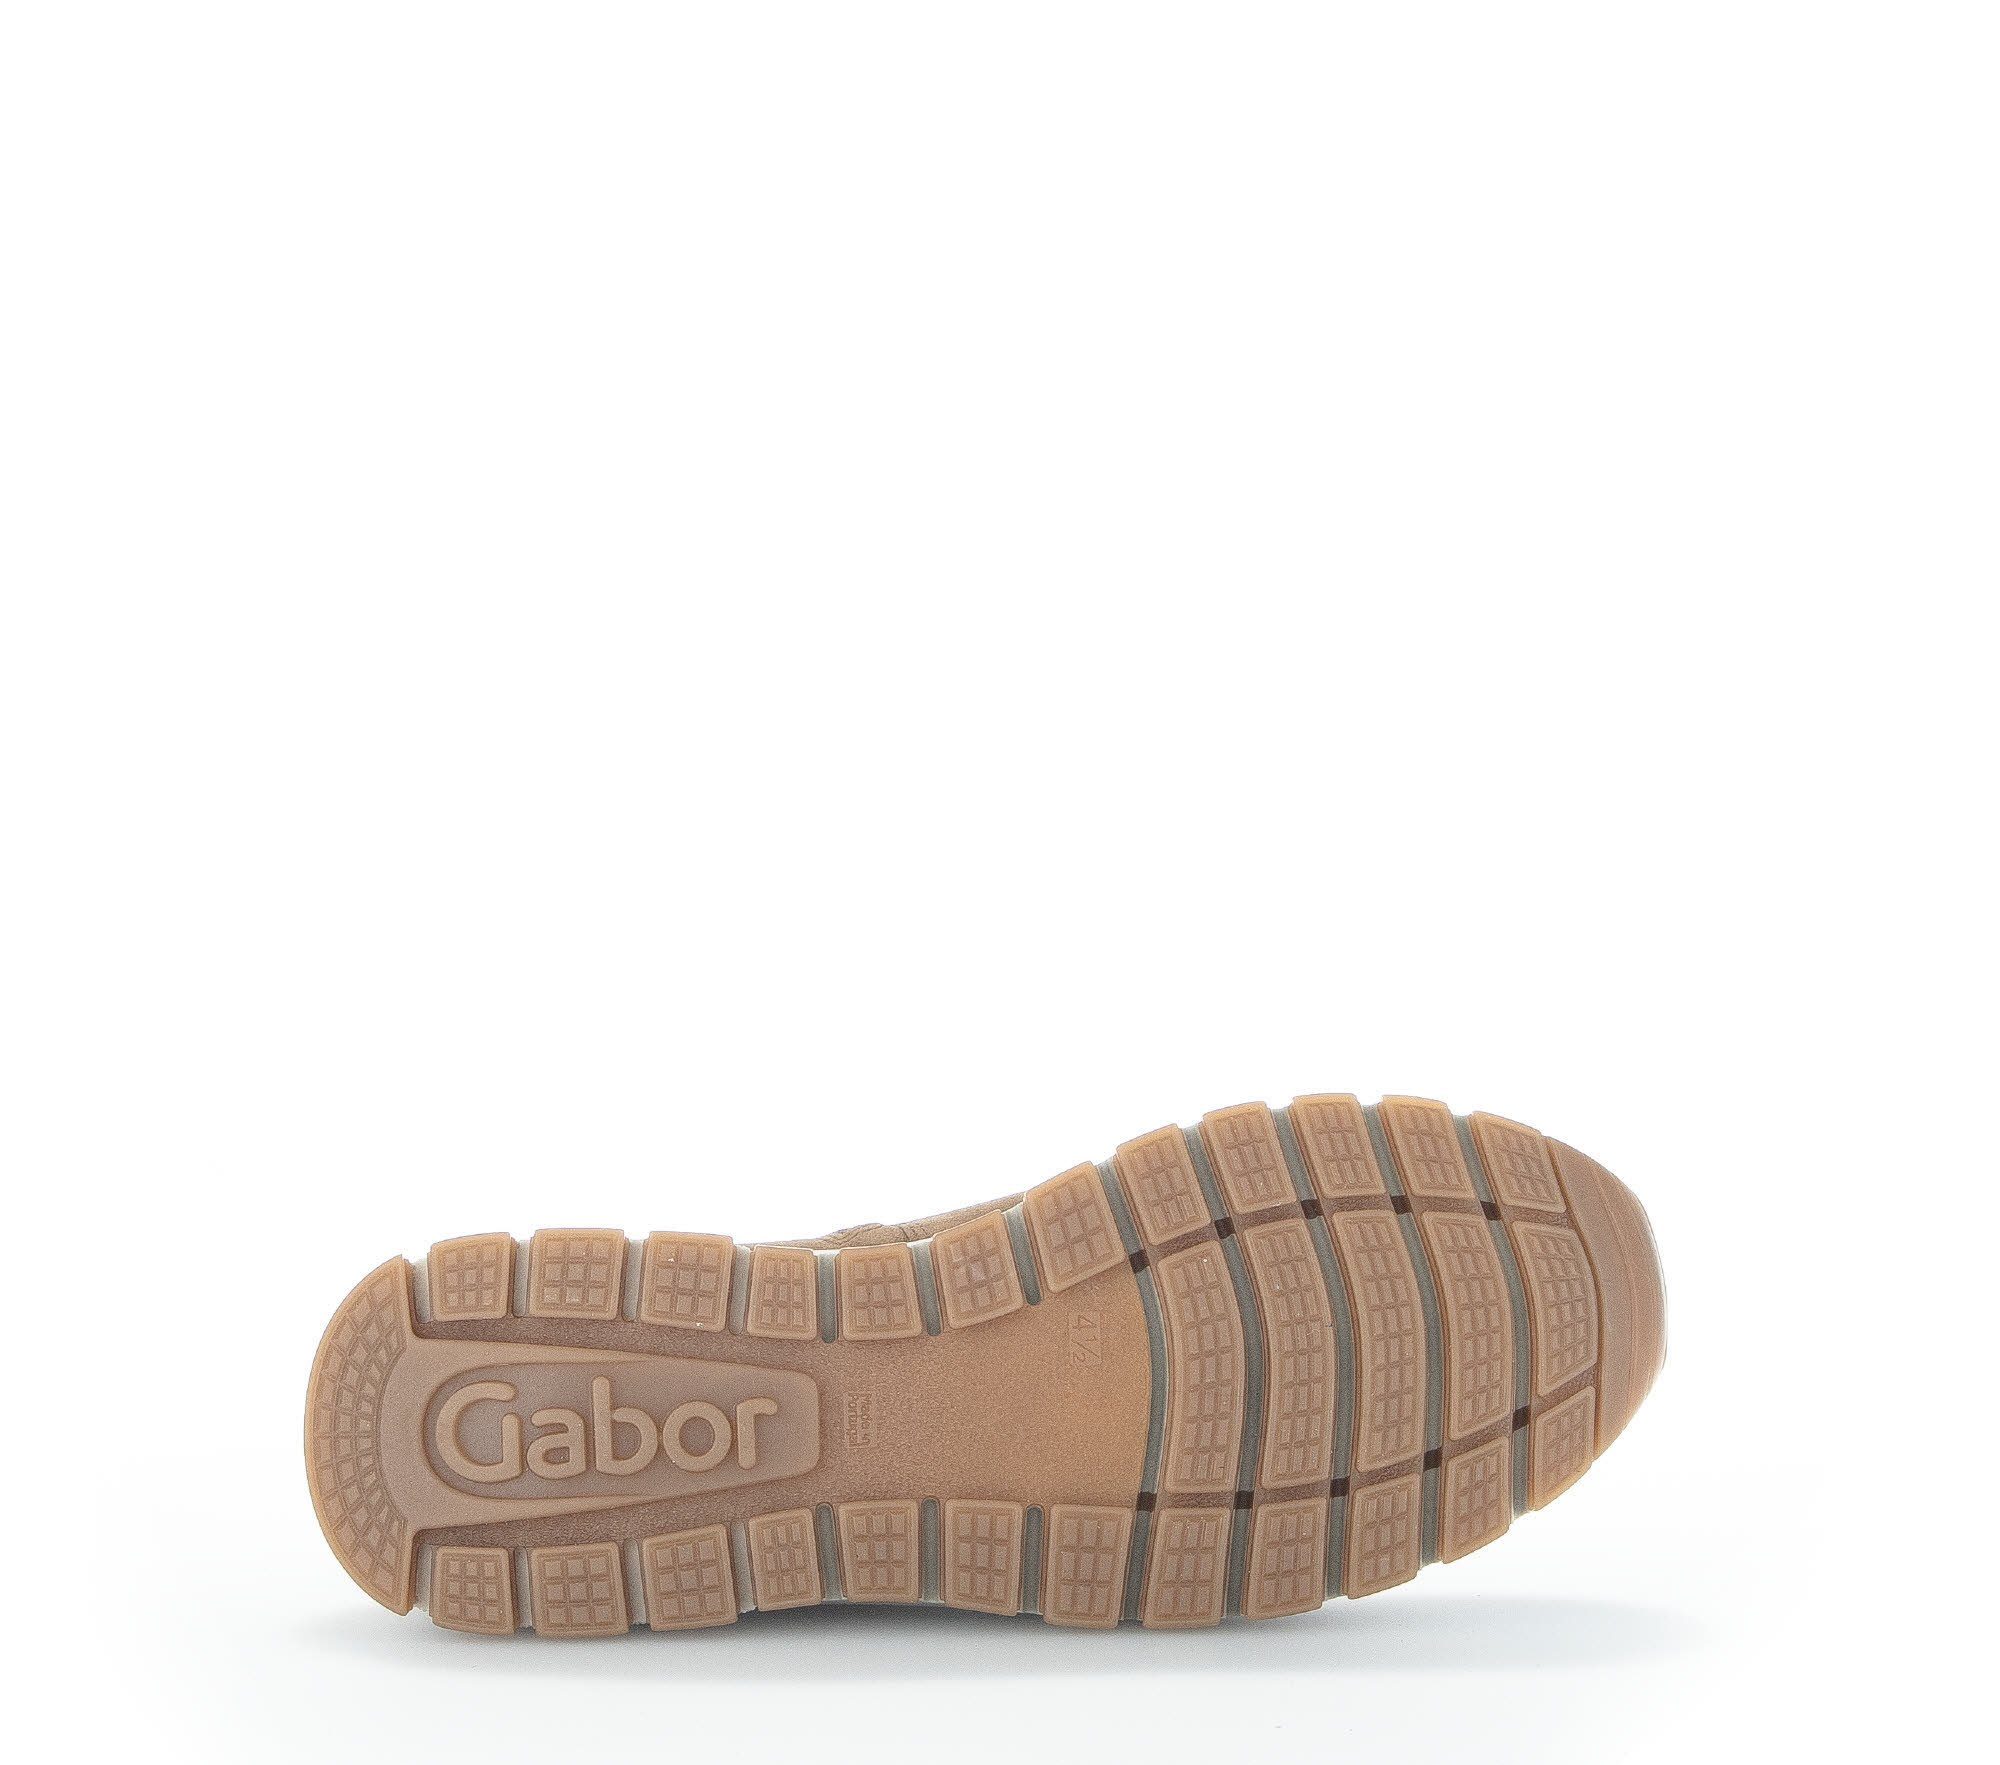 Gabor 93.550.14 Chelseaboots (lion) Braun